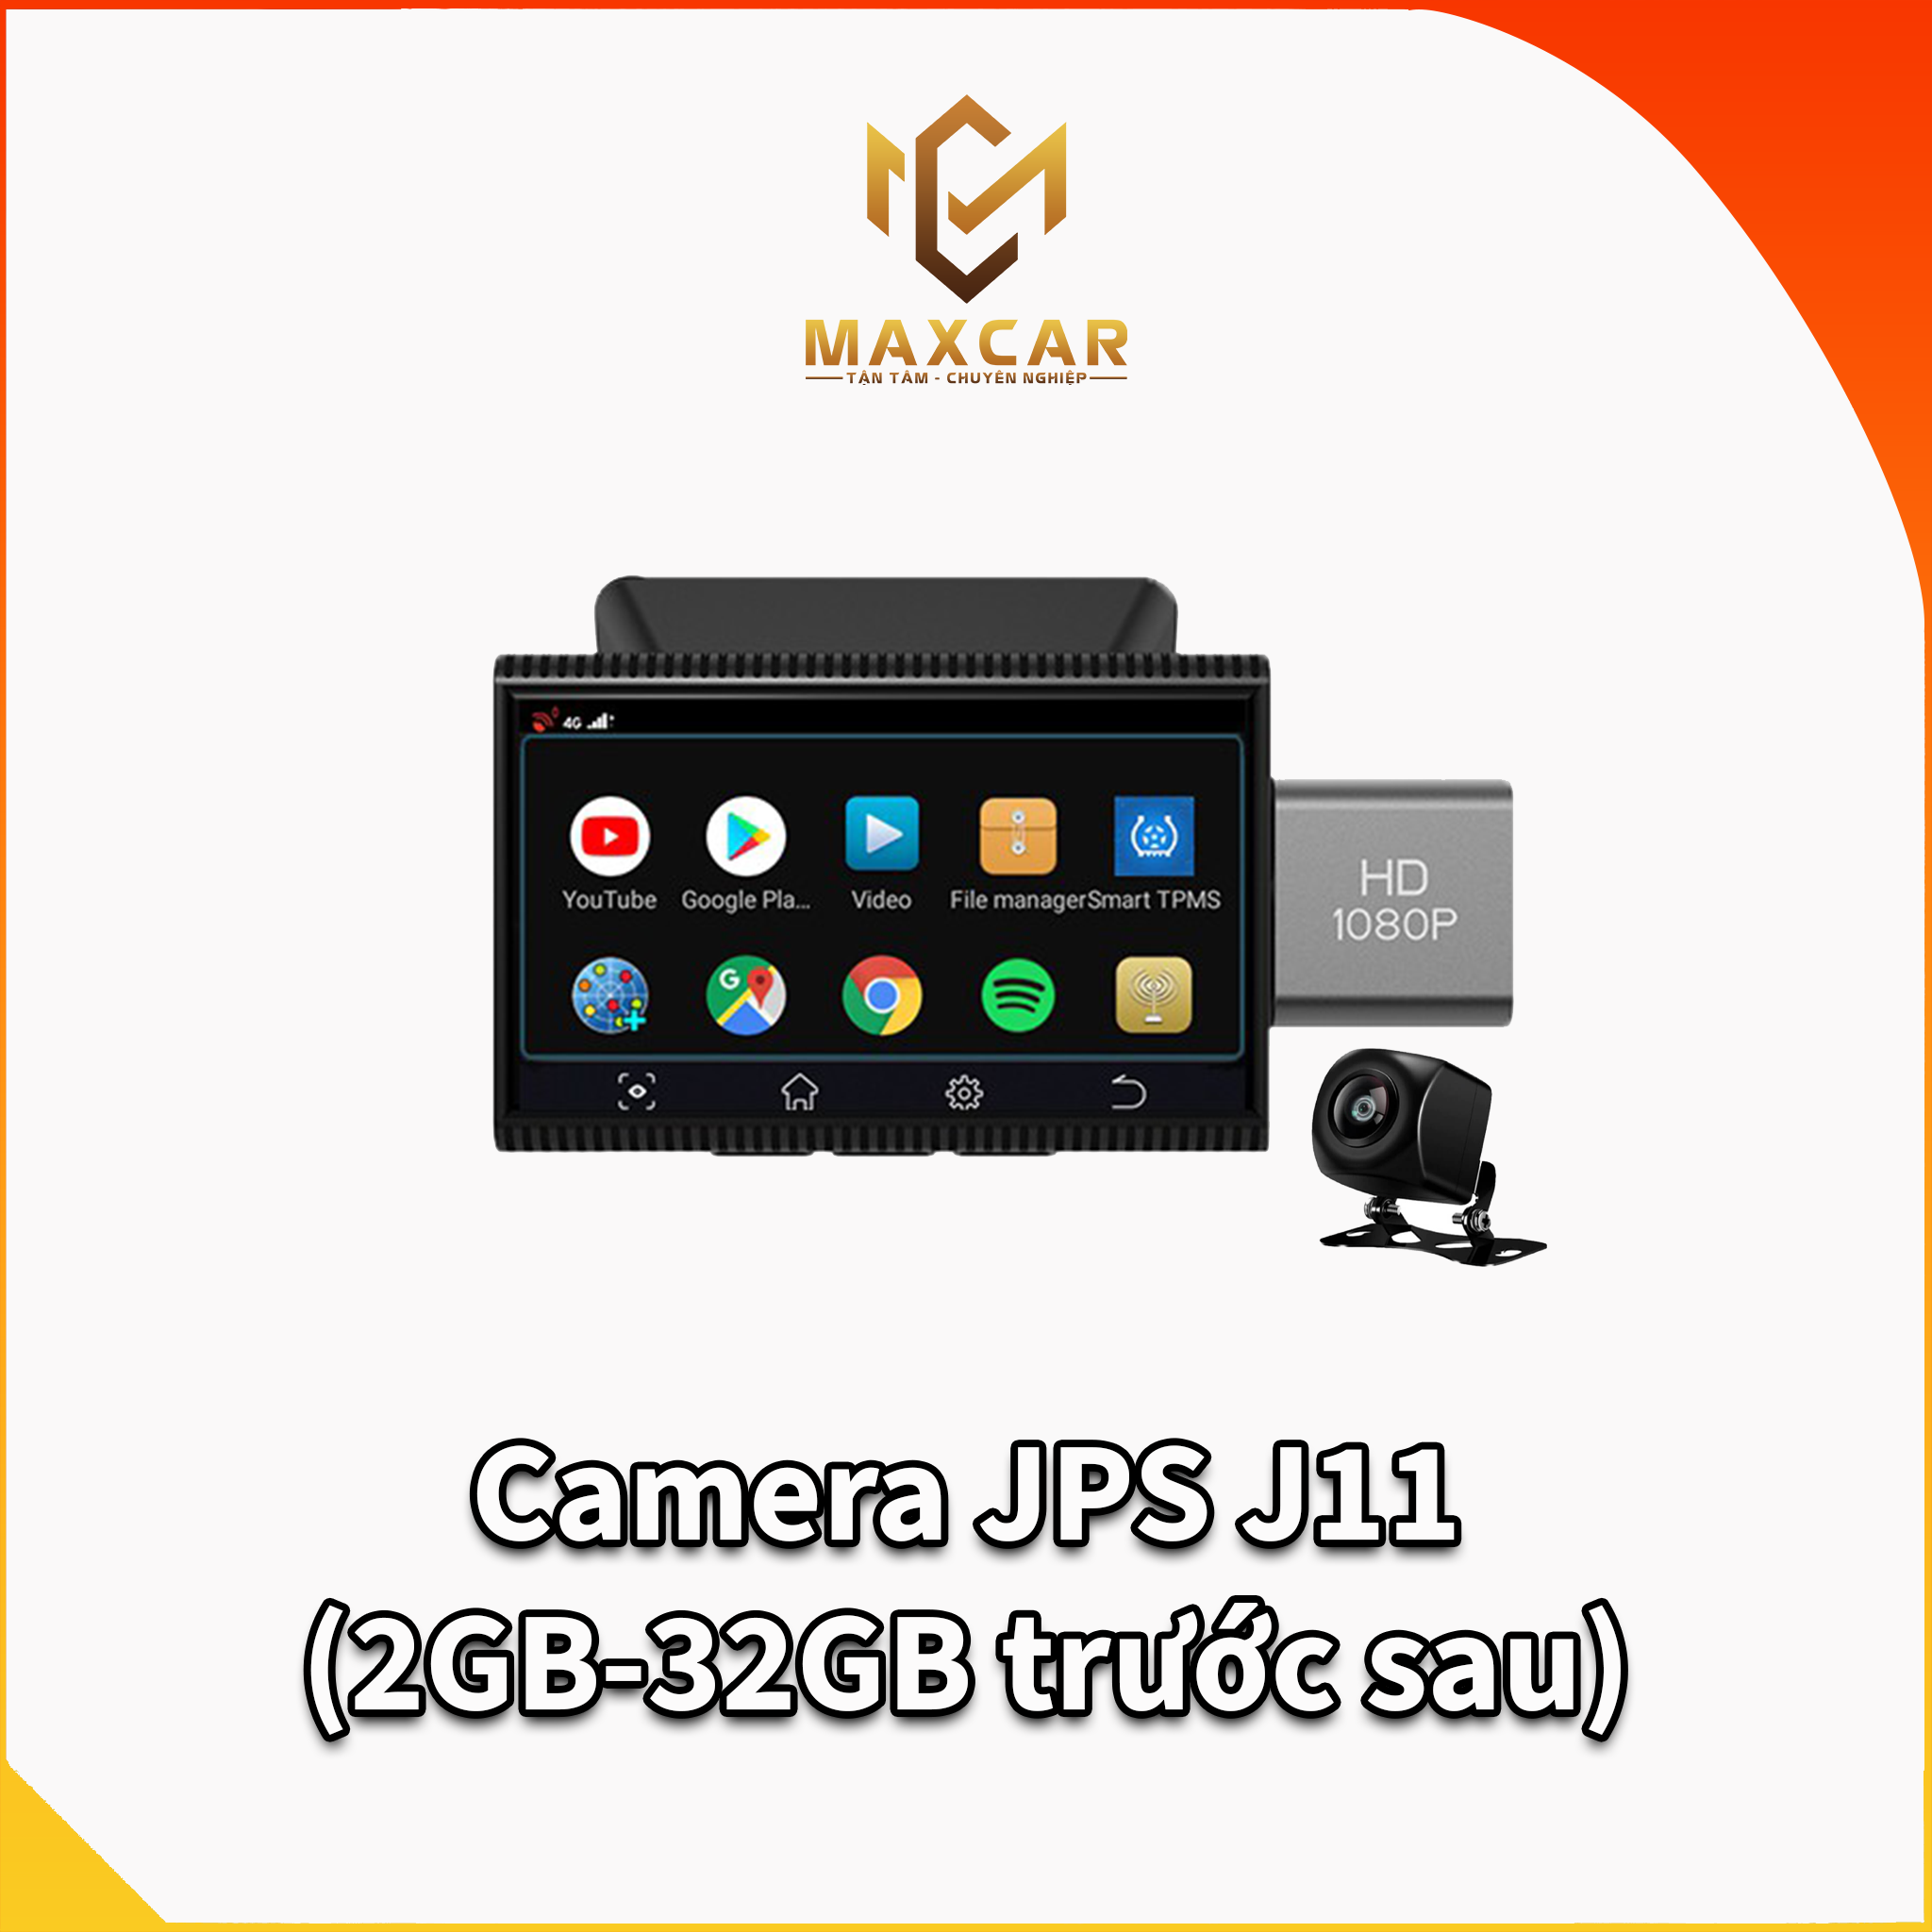 Camera JPS J11 (2GB-32GB  trước sau) tốt nhất cho ô tô